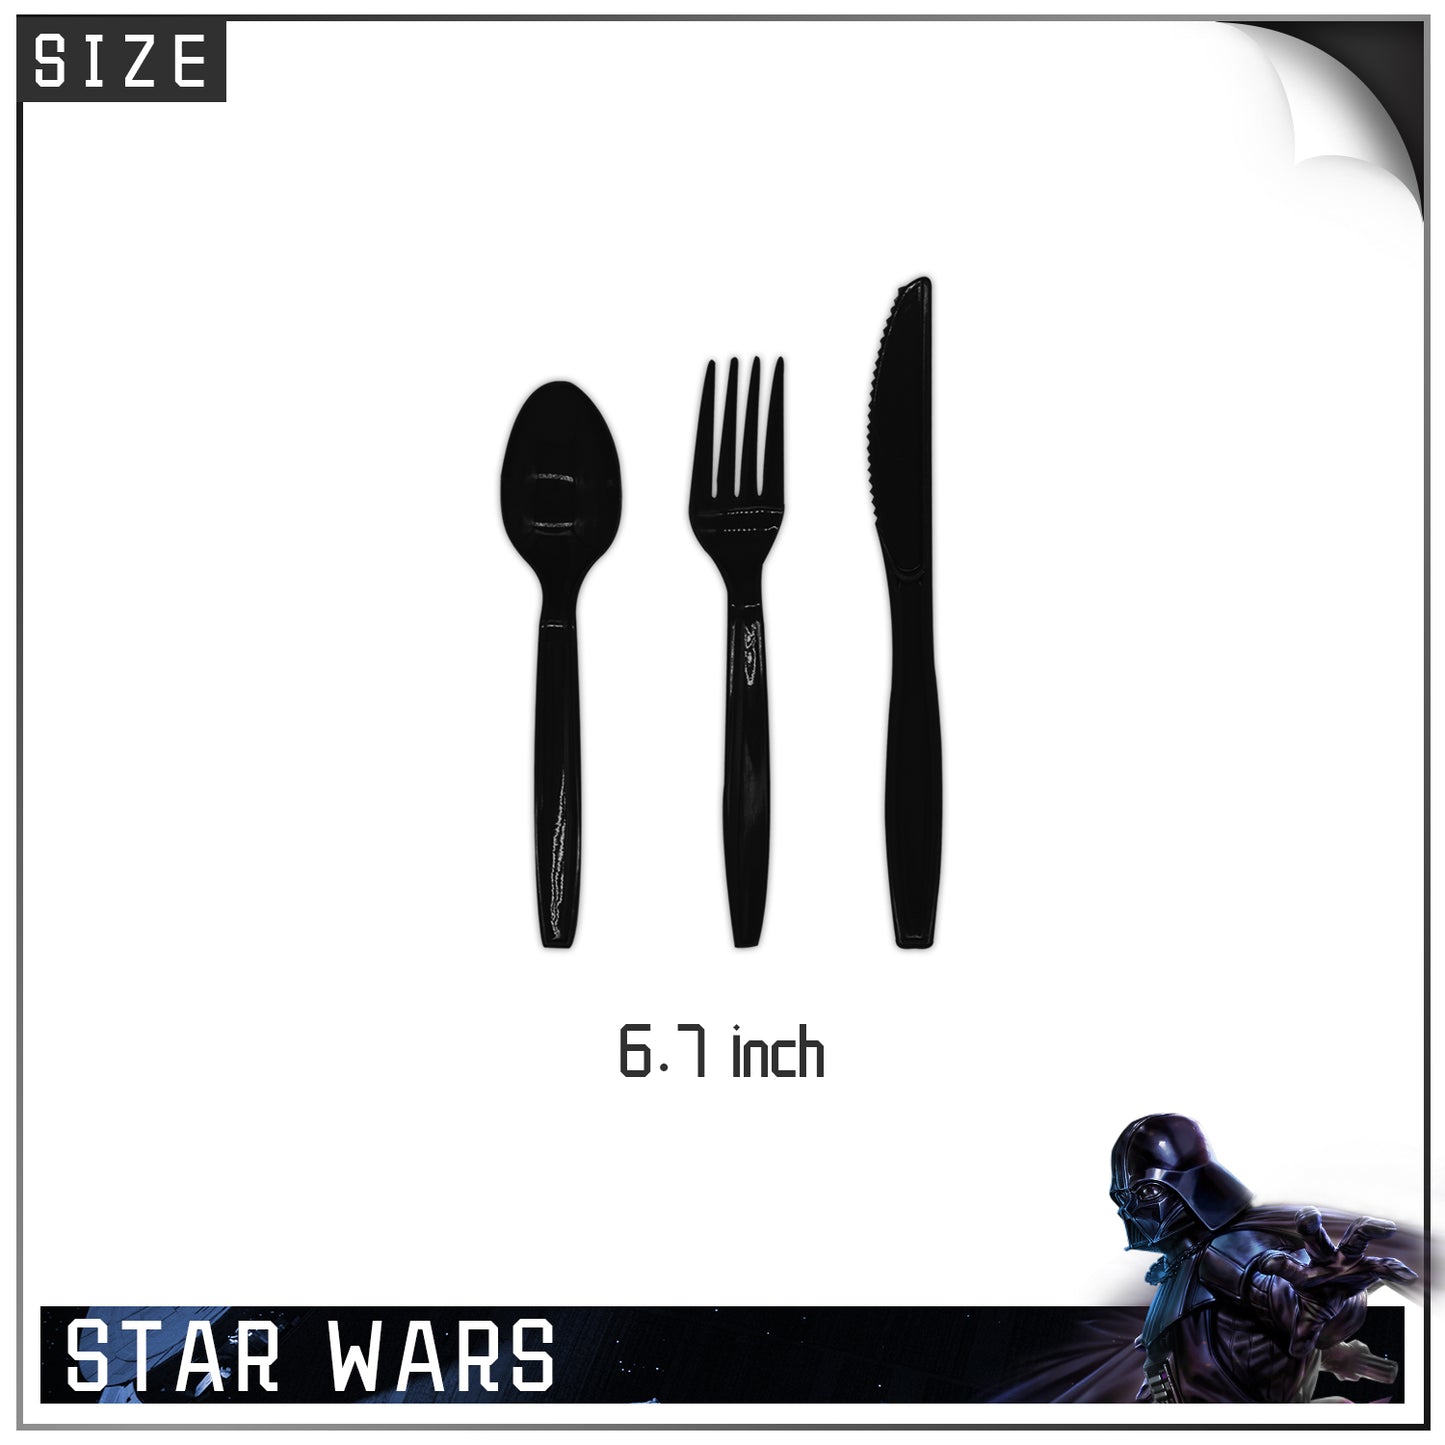 Star Wars Cutlery Supplies.